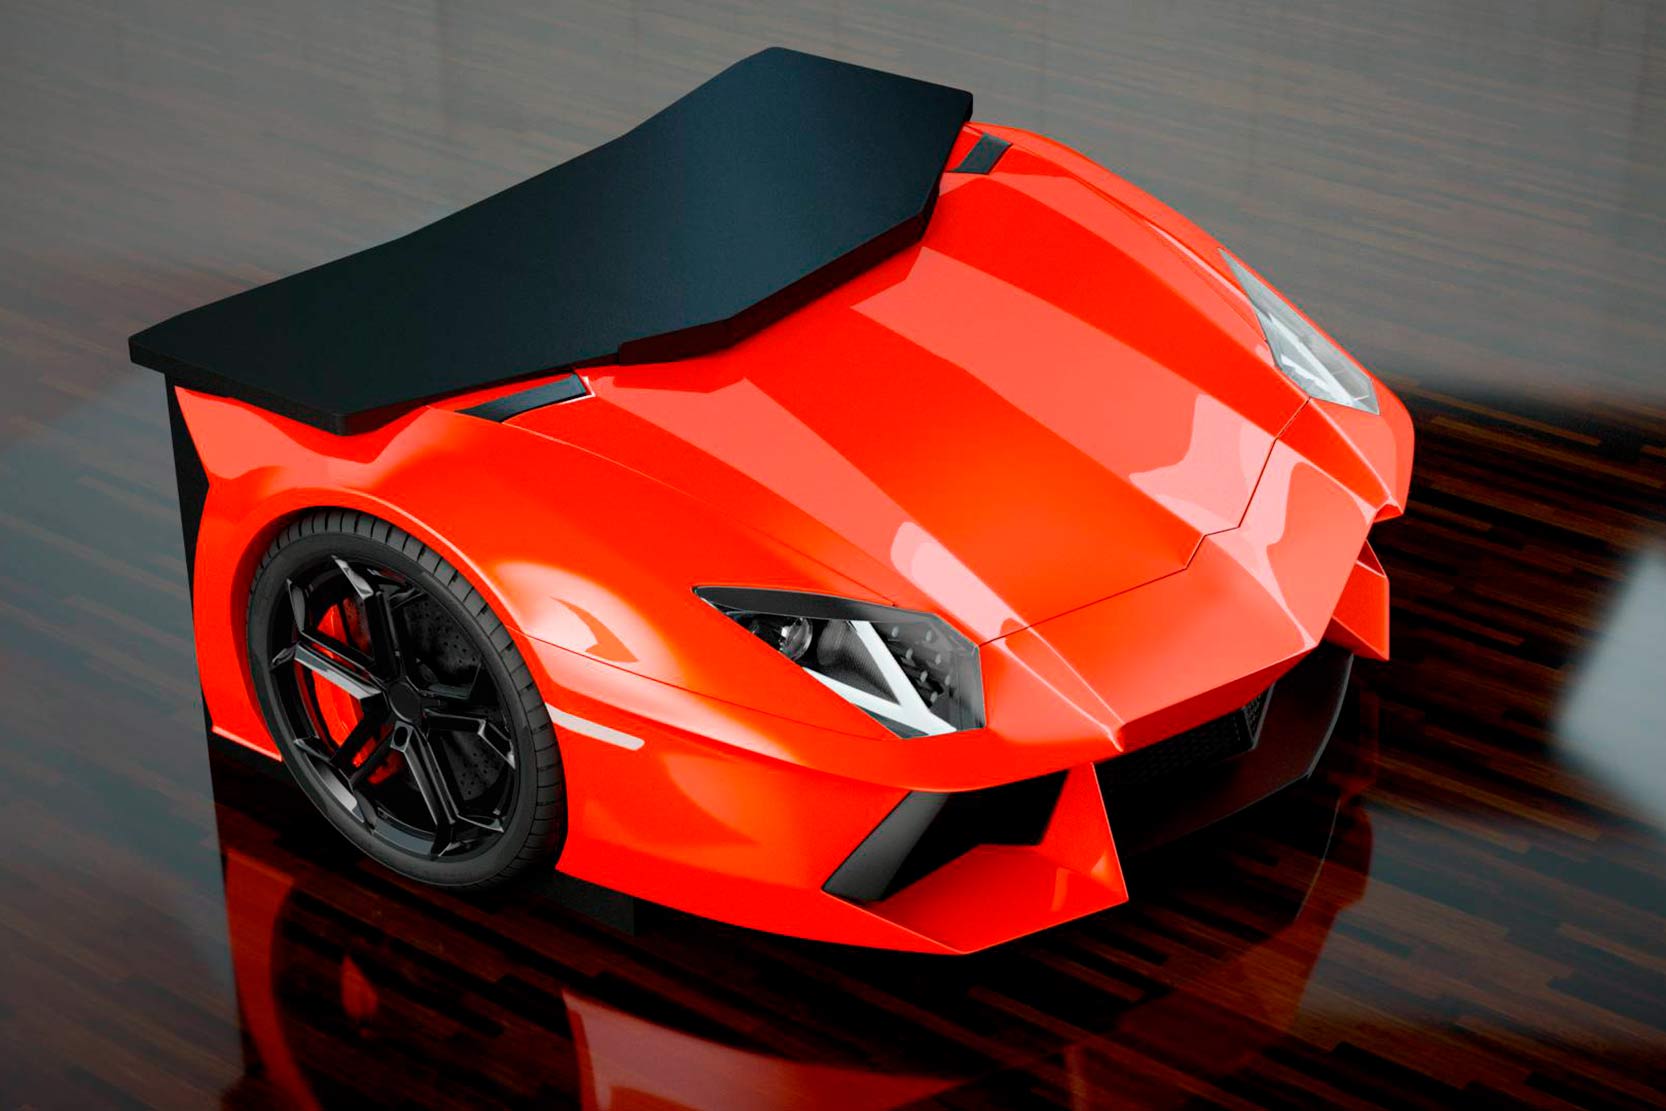 Image principale de l'actu: Lamborghini aventador un bureau a 30 000 euros 